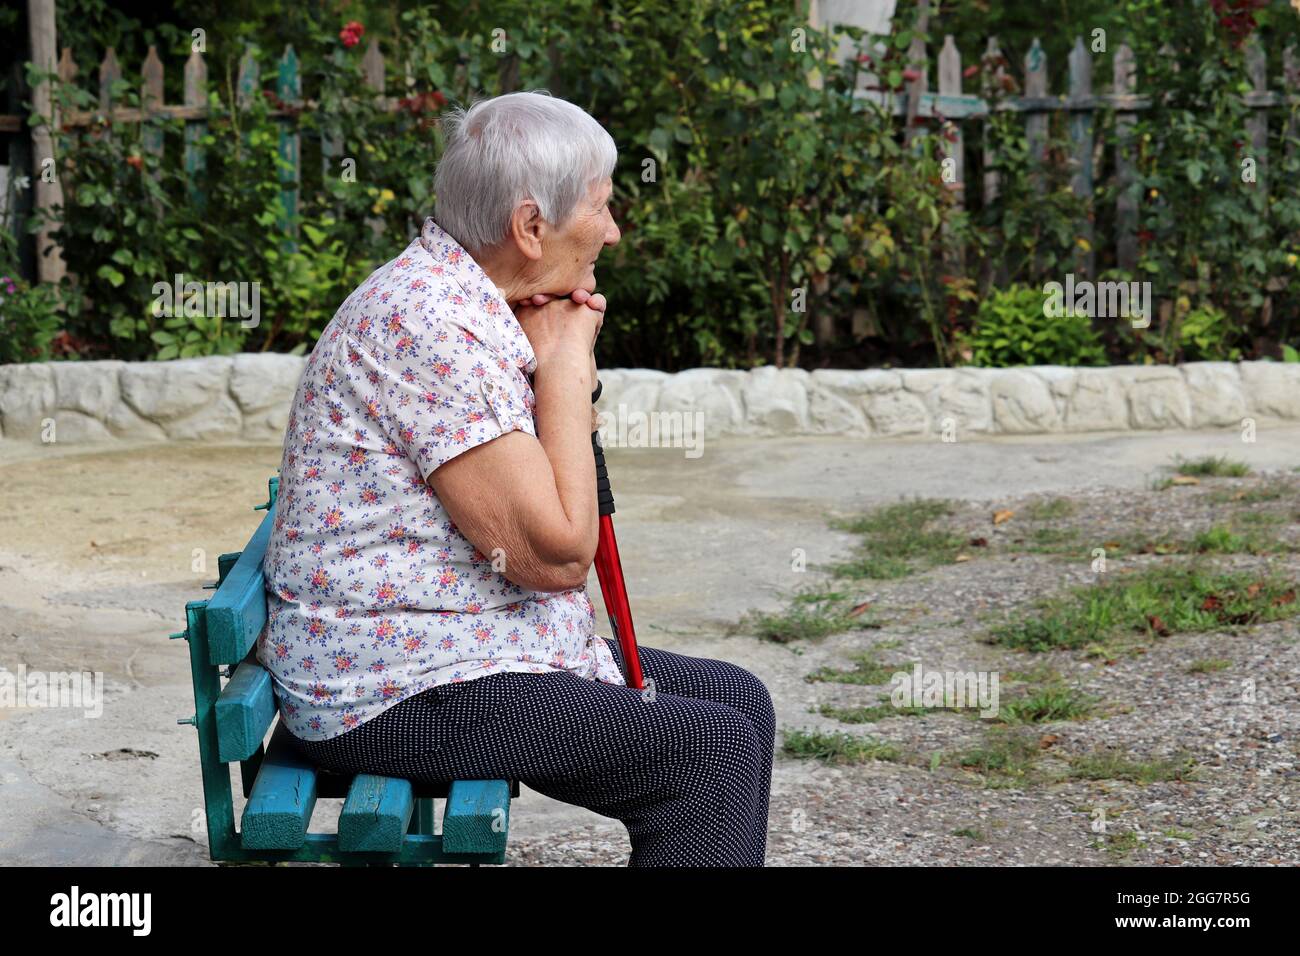 Ältere Frau, die mit Gehstock auf einer Bank in einem Hof sitzt. Gesunde Lebensweise im Alter, Leben im Ruhestand Stockfoto